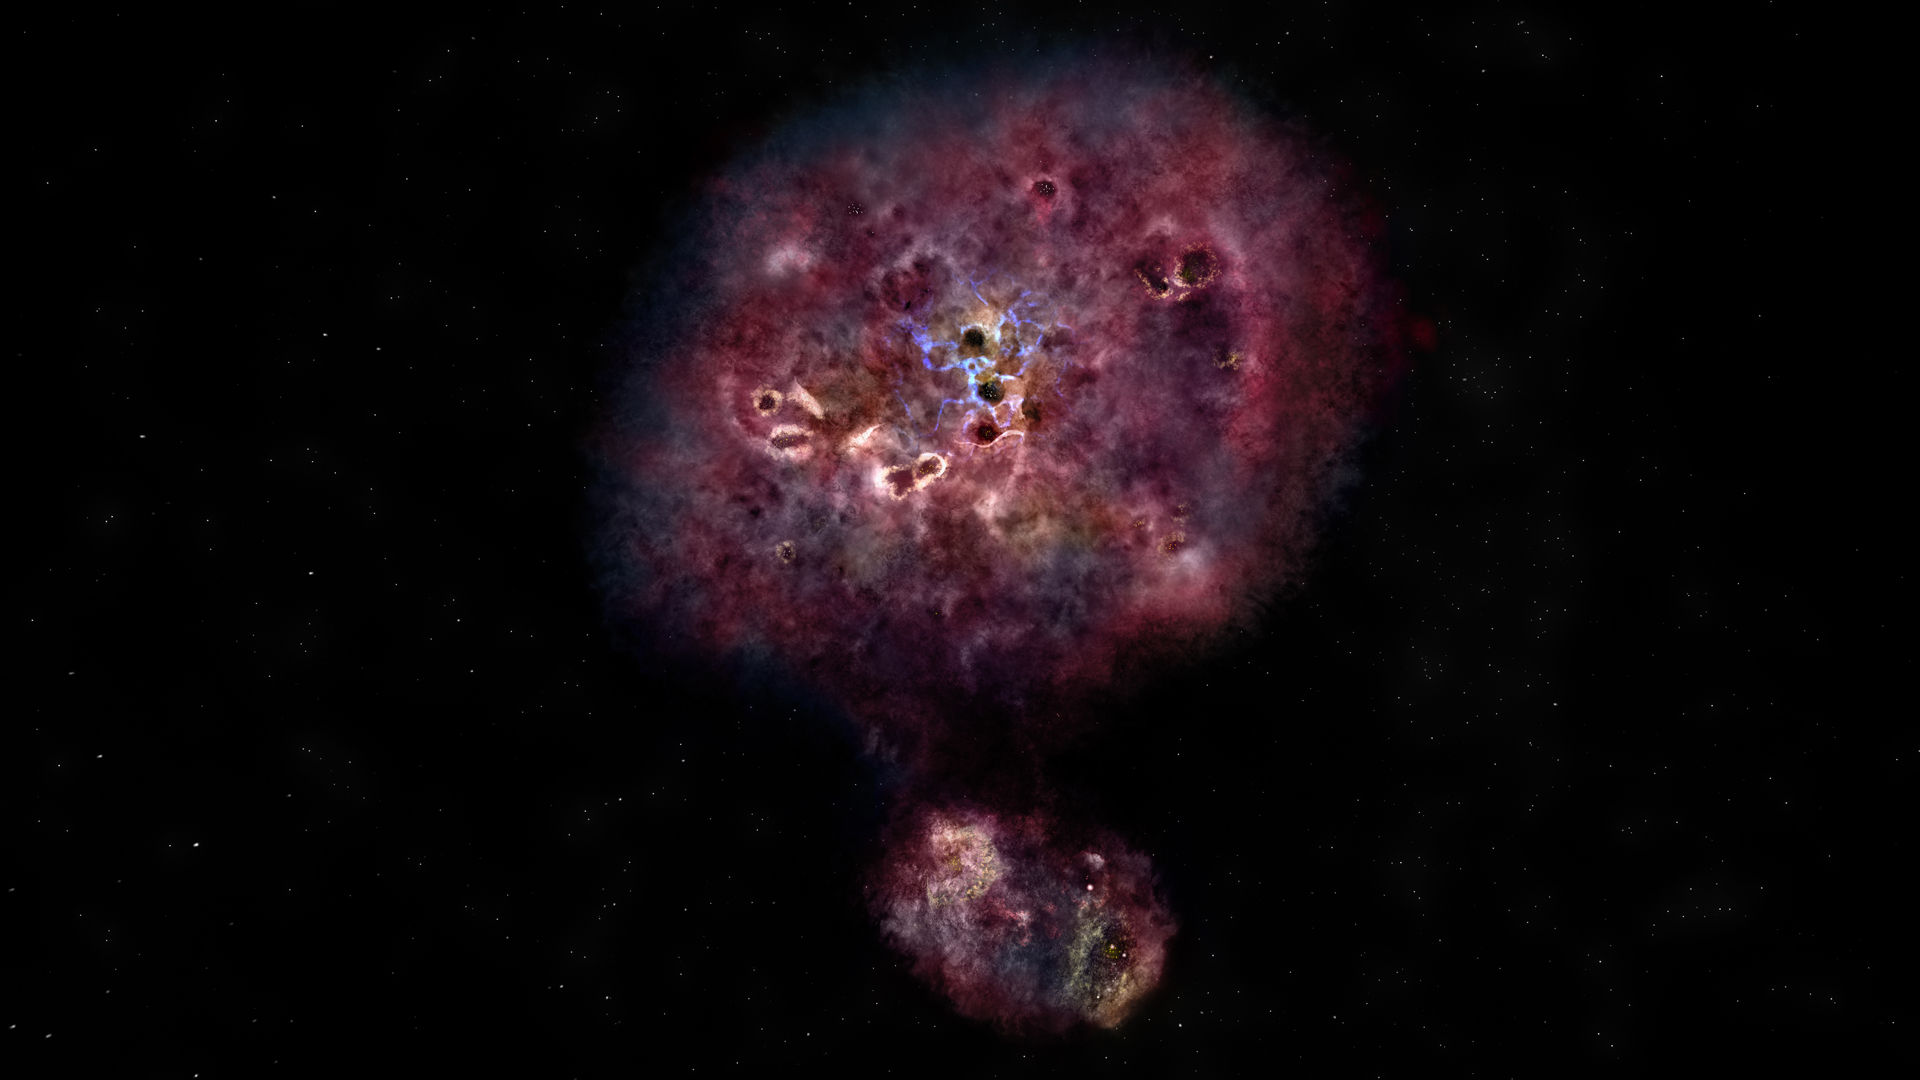 Artist impression of distant, dusty galaxy